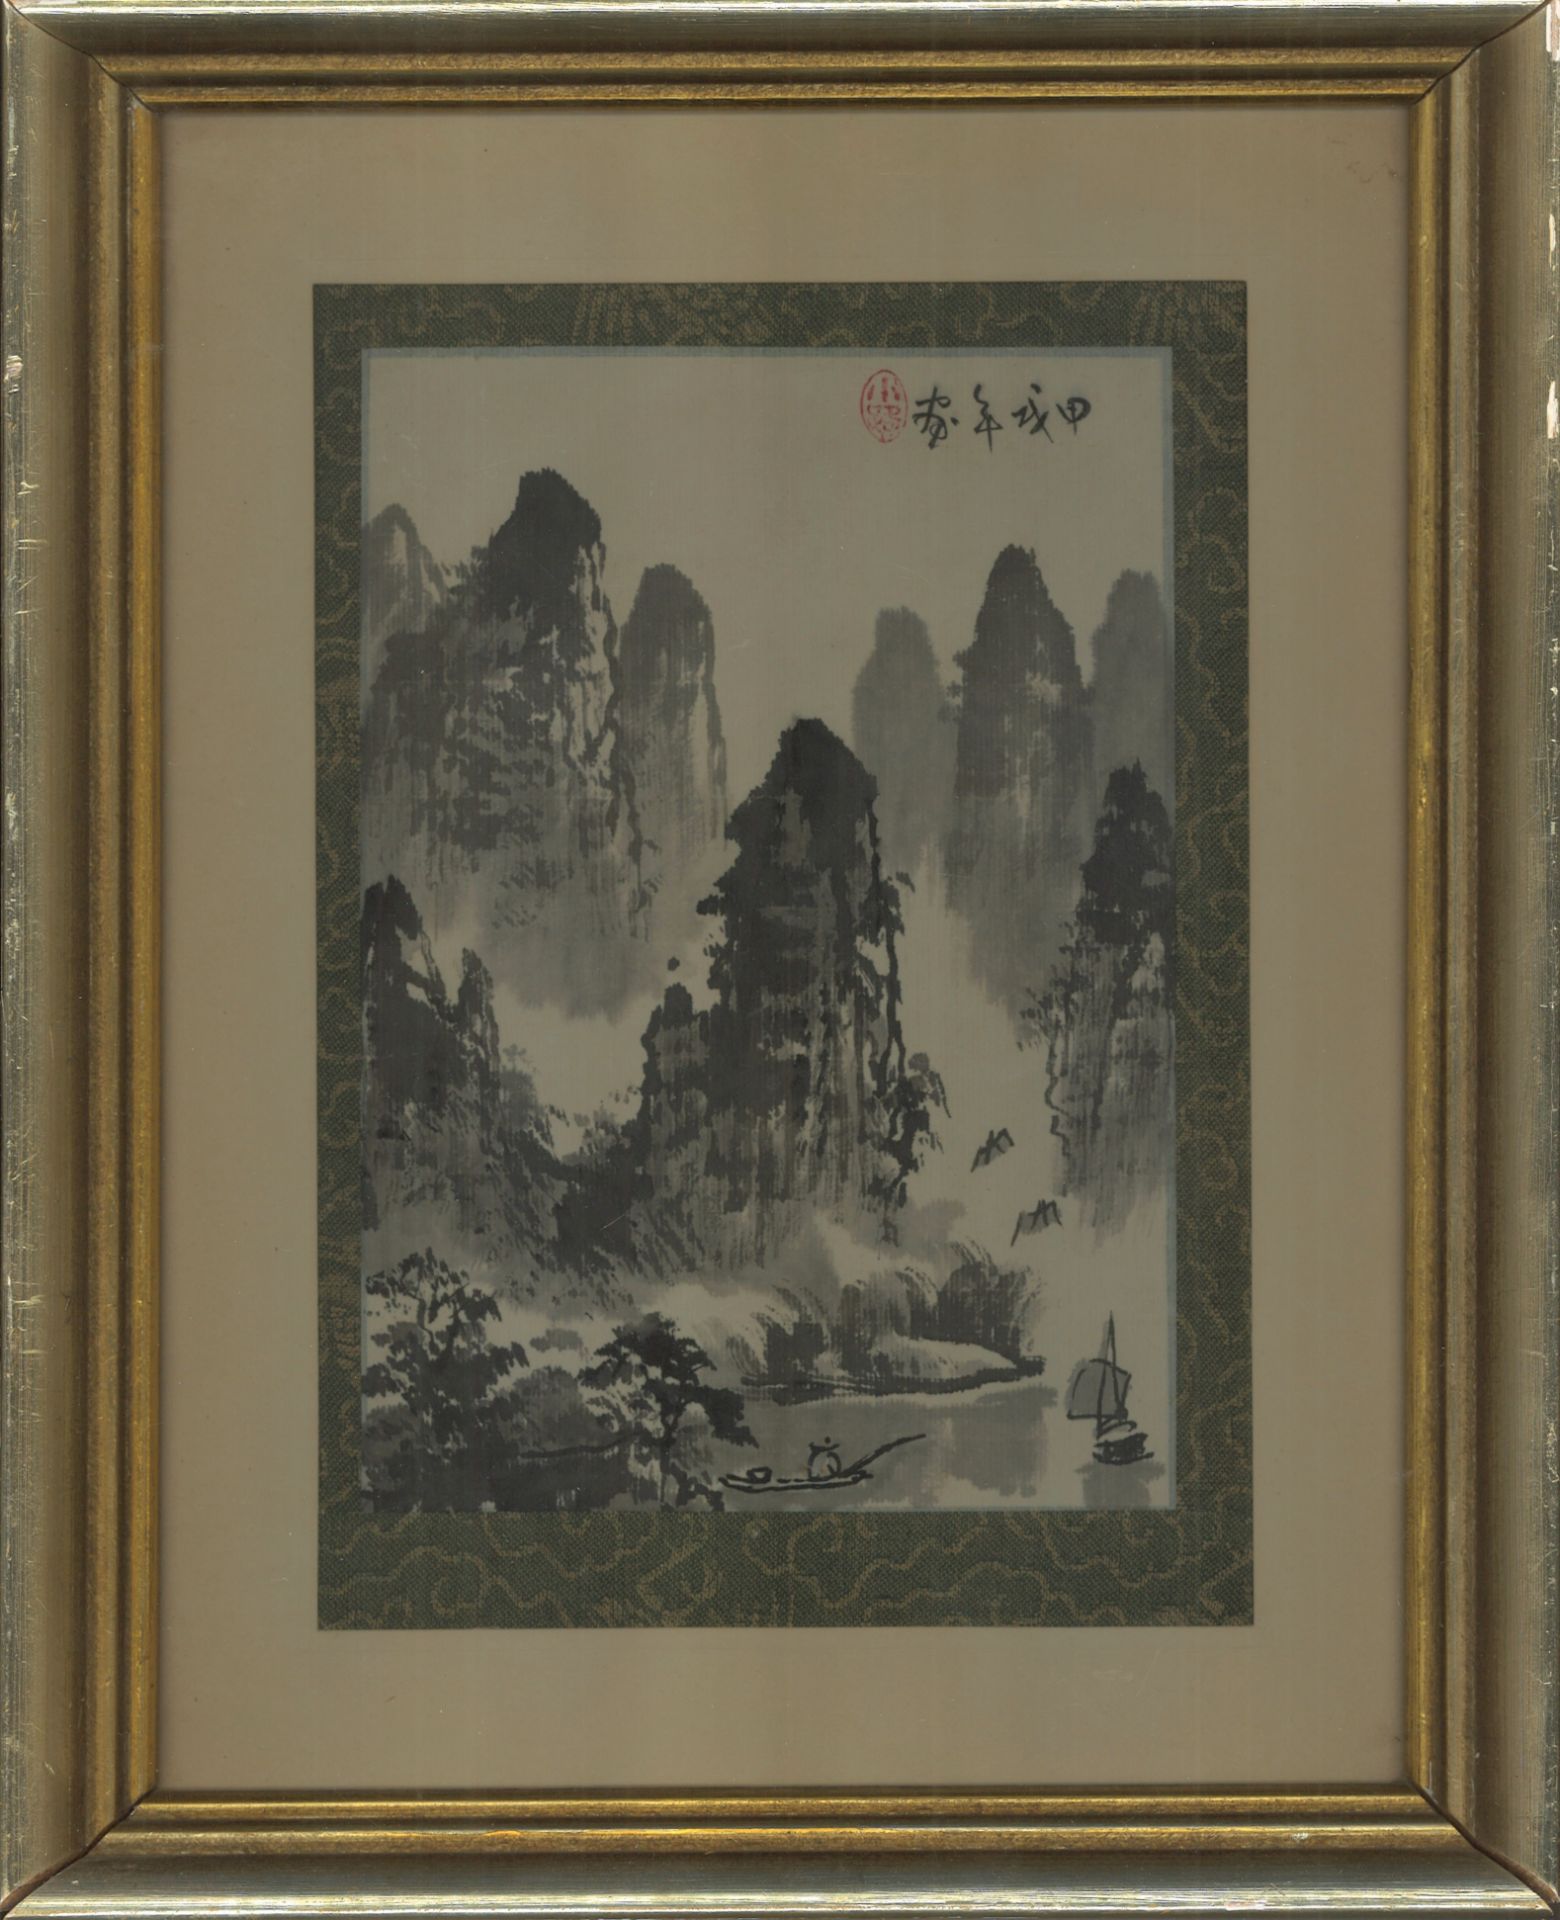 Tuschezeichnung China "Gebirge mit Dschunke", rechts oben Signatur. Hinter Glas gerahmt. Gesamtmaße: